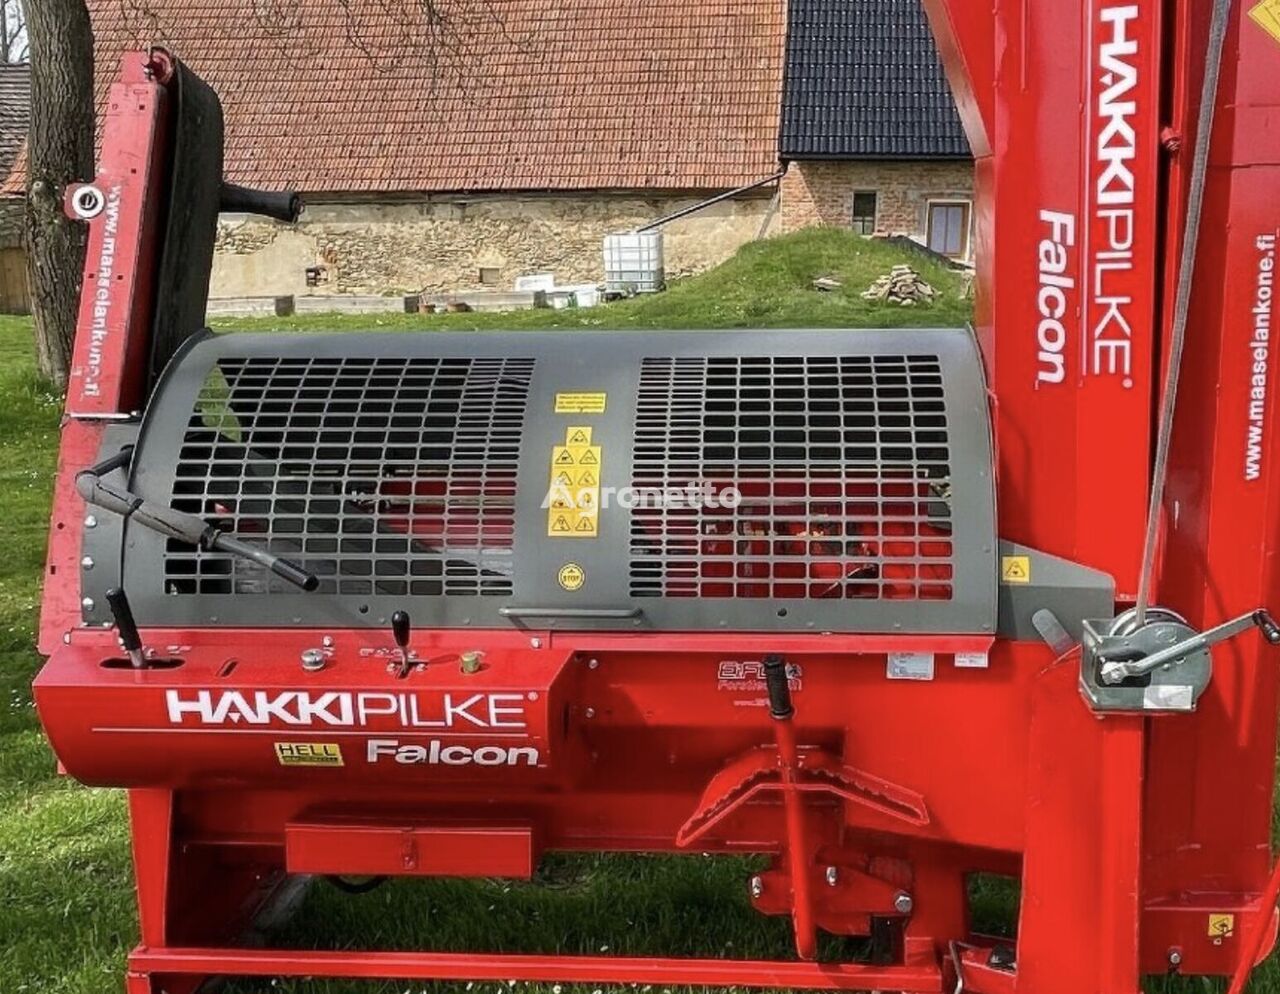 Hakki Pilke 35 Falcon Pohon Traktor 2020 log splitter